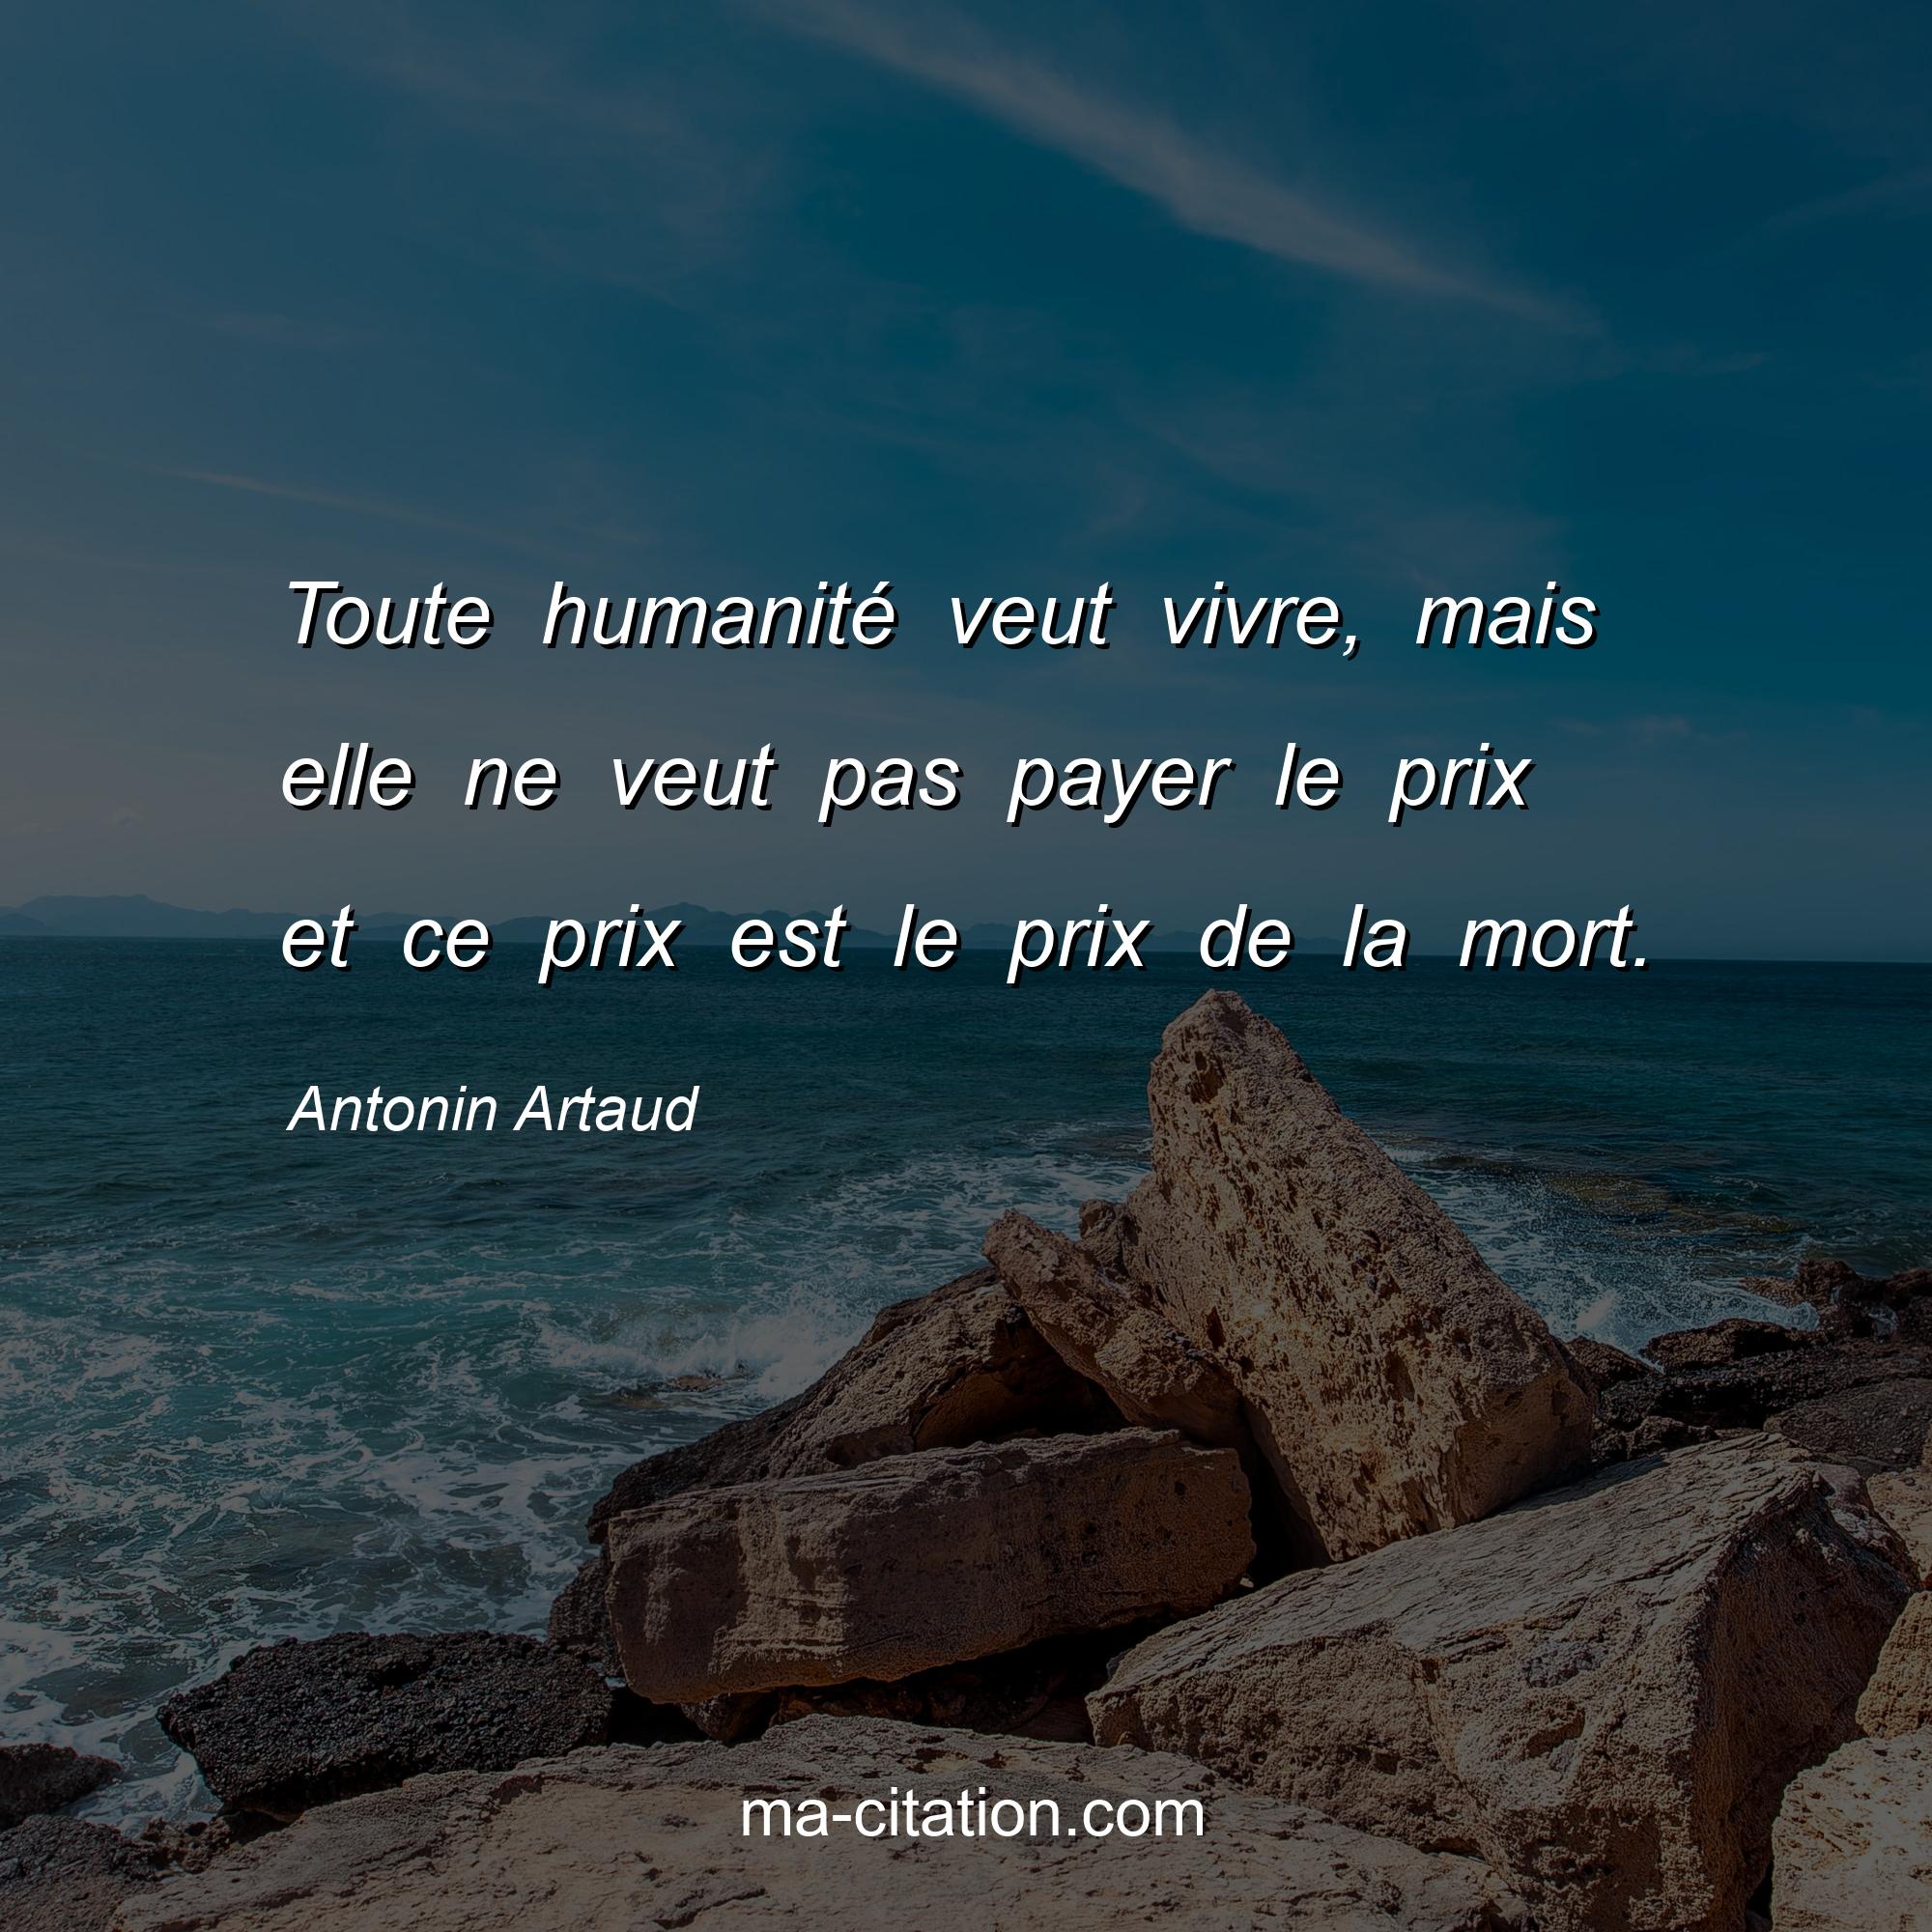 Antonin Artaud : Toute humanité veut vivre, mais elle ne veut pas payer le prix et ce prix est le prix de la mort.